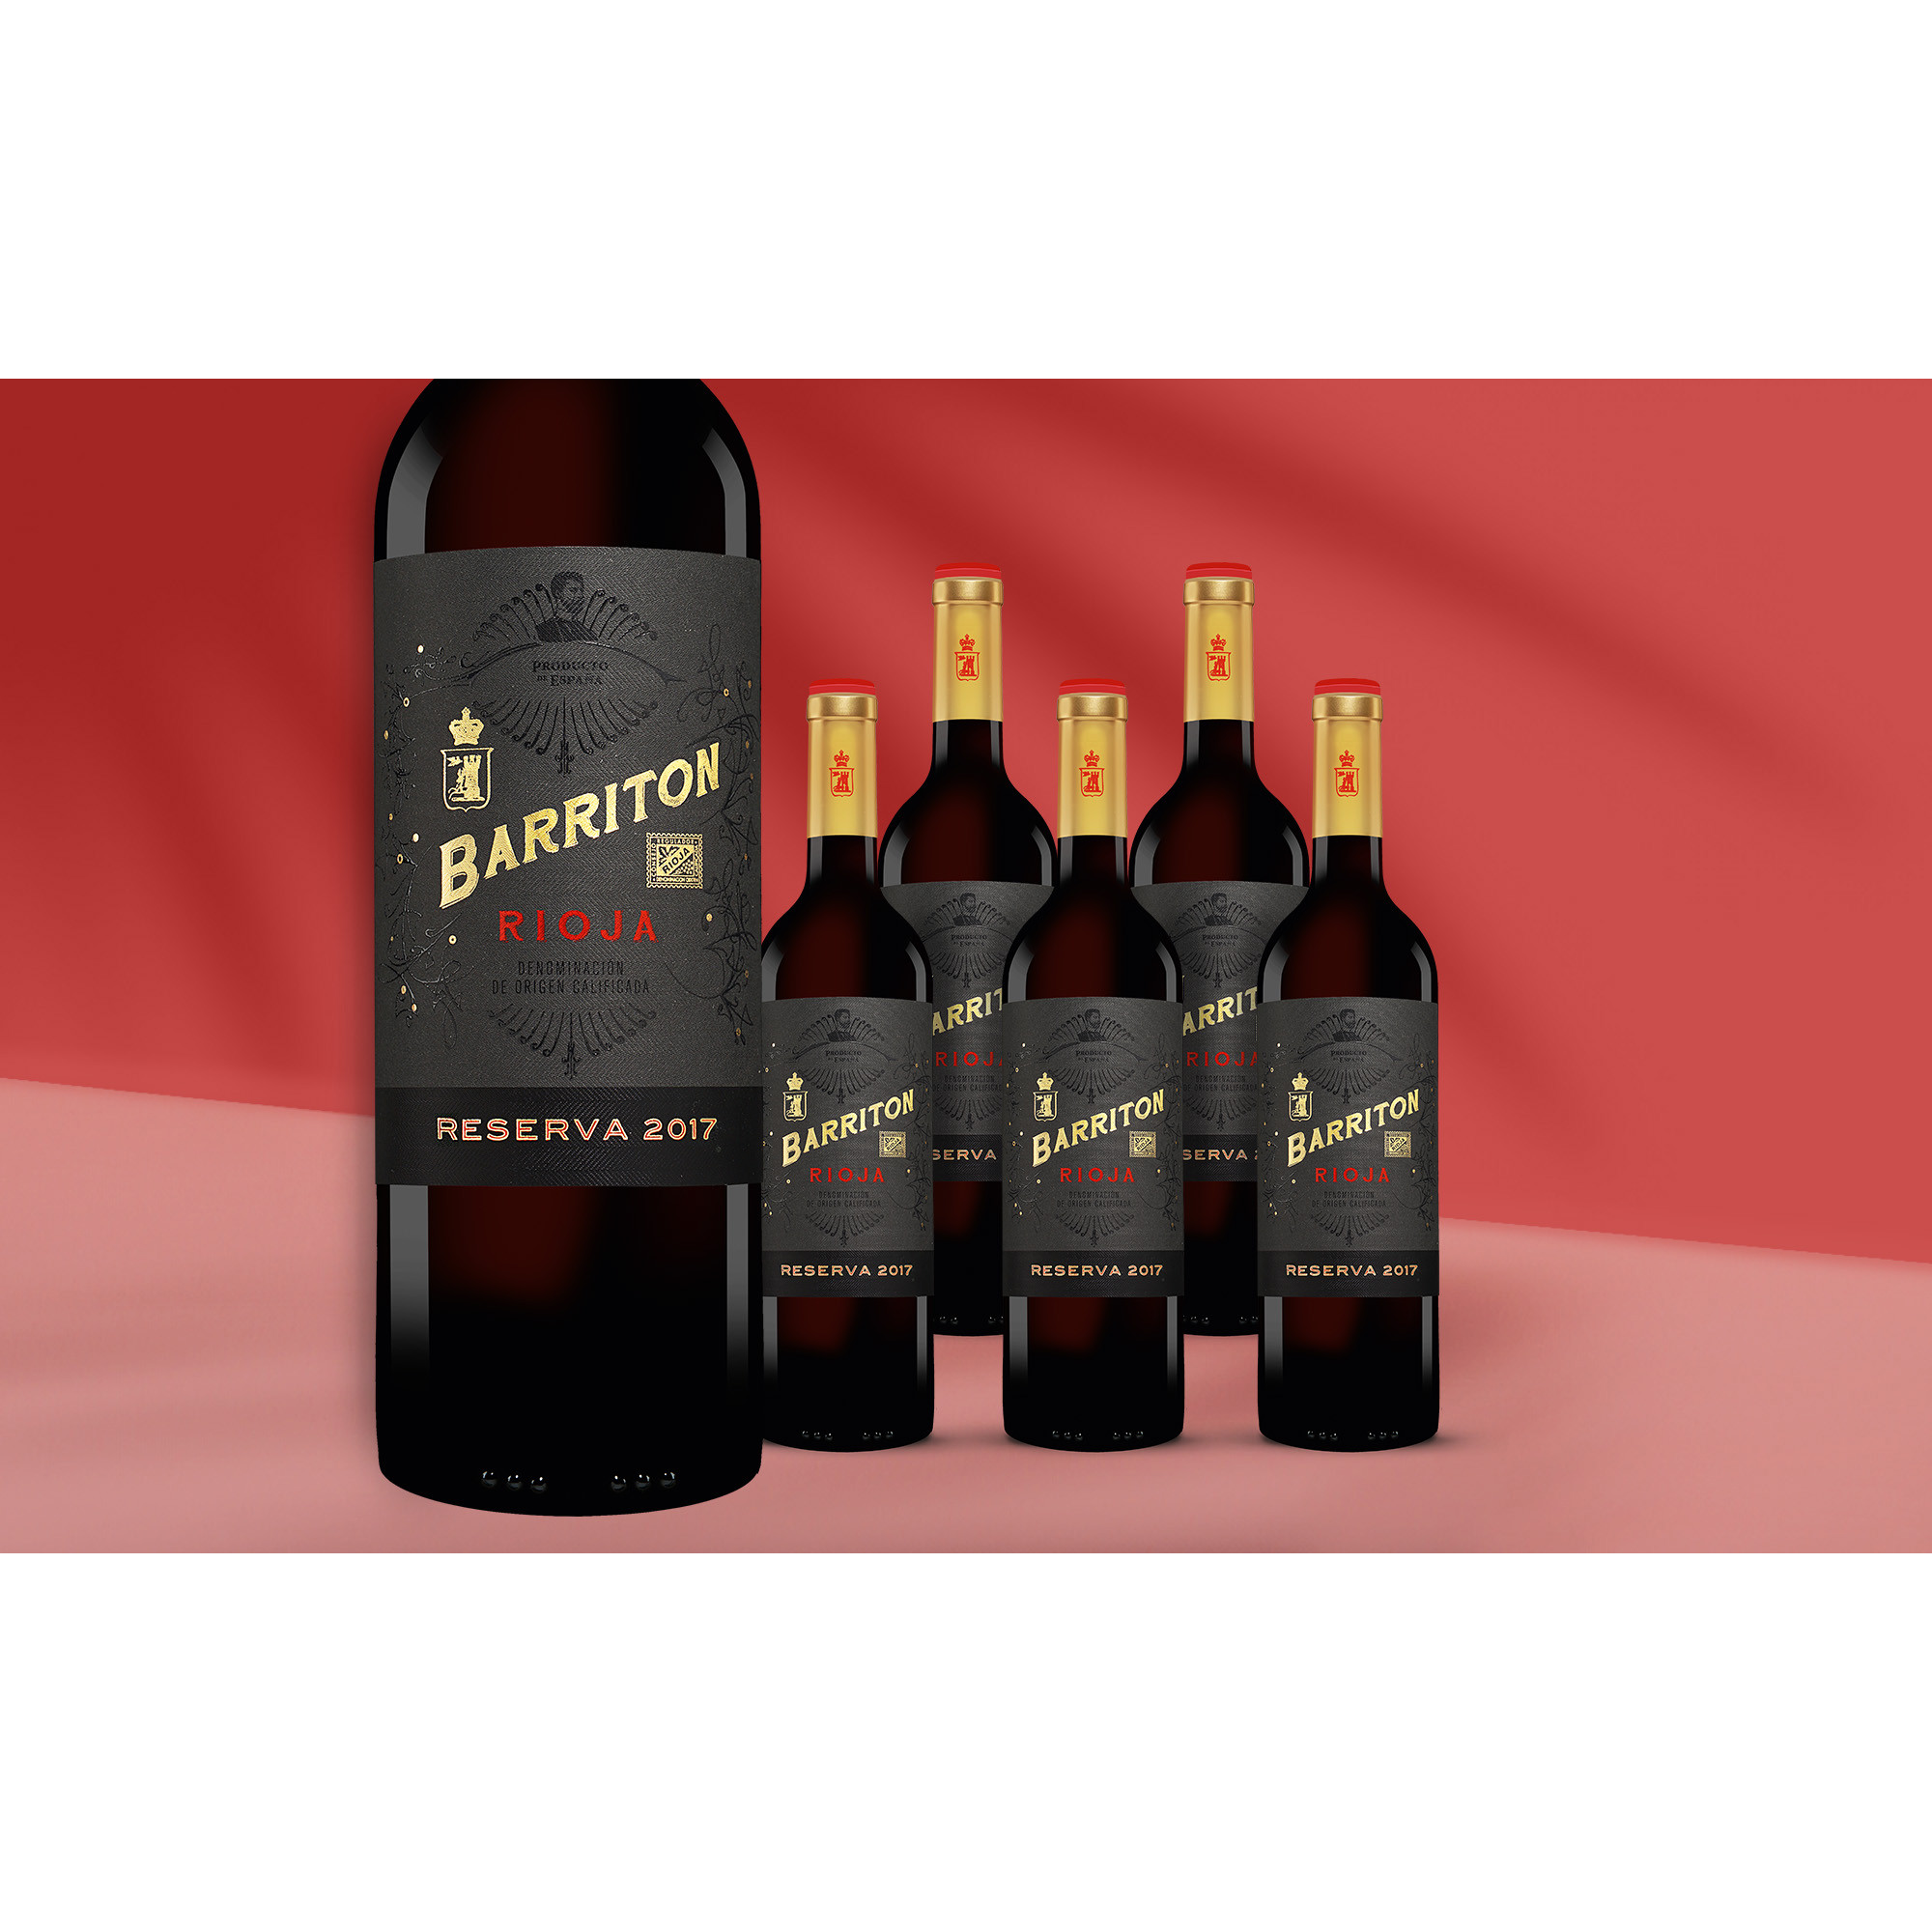 Barriton Reserva 2017  413.5% Vol. Weinpaket aus Spanien